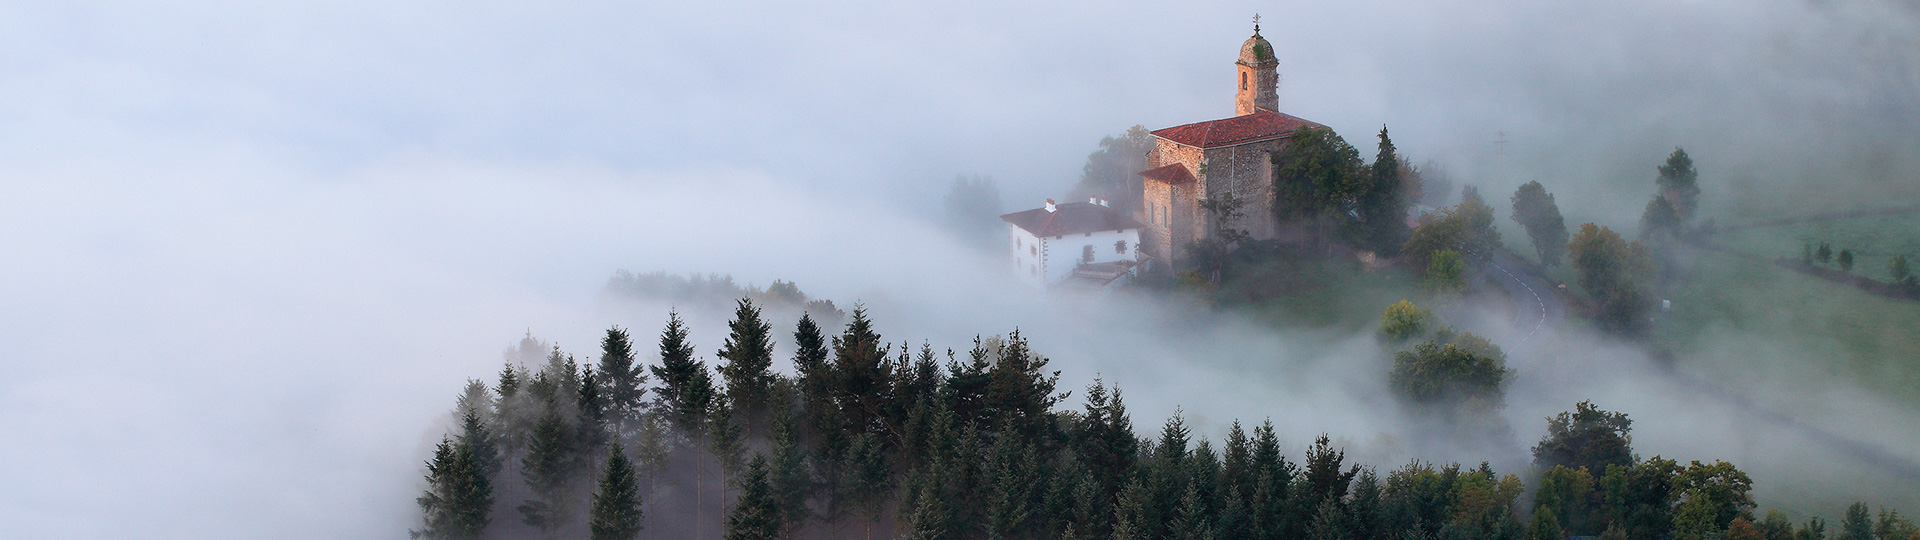 Nebbia all'alba nella valle di Aramayona, Paesi Baschi